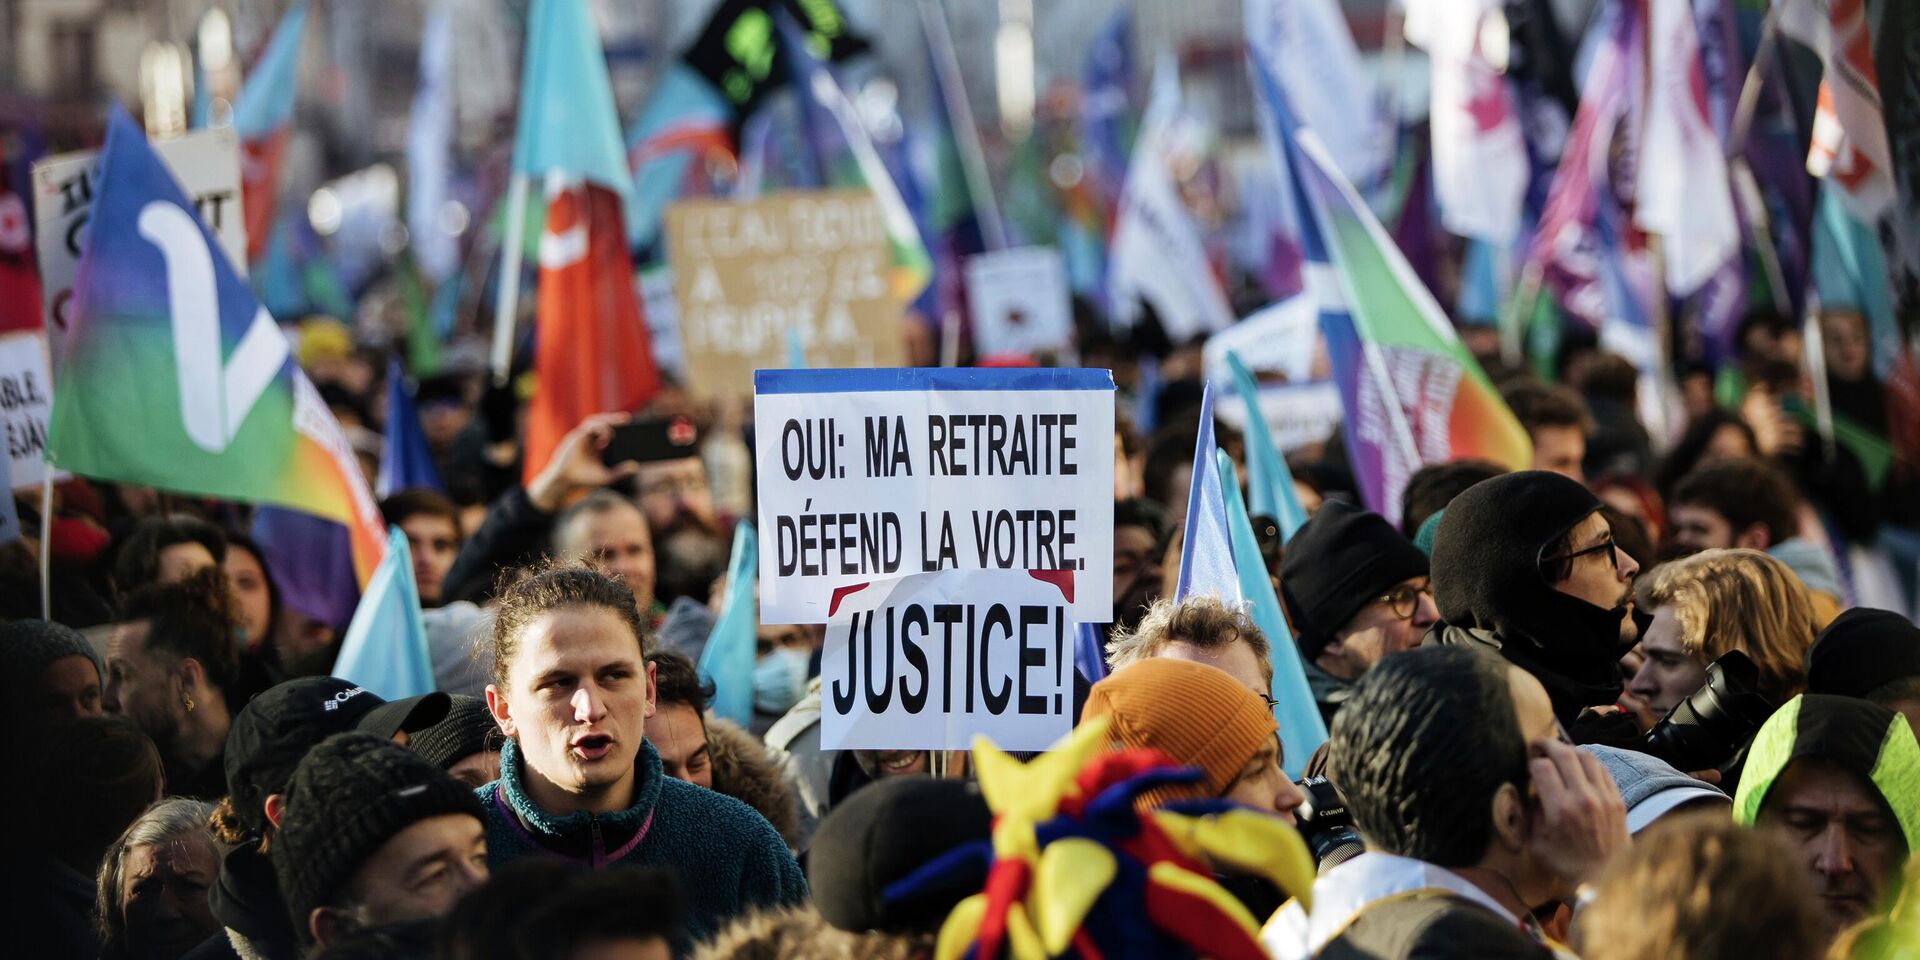 Митингующие вышли на улицы в знак протеста против пенсионной реформы президента Франции, в Париже. 21 января 2023 года. - ИноСМИ, 1920, 23.01.2023